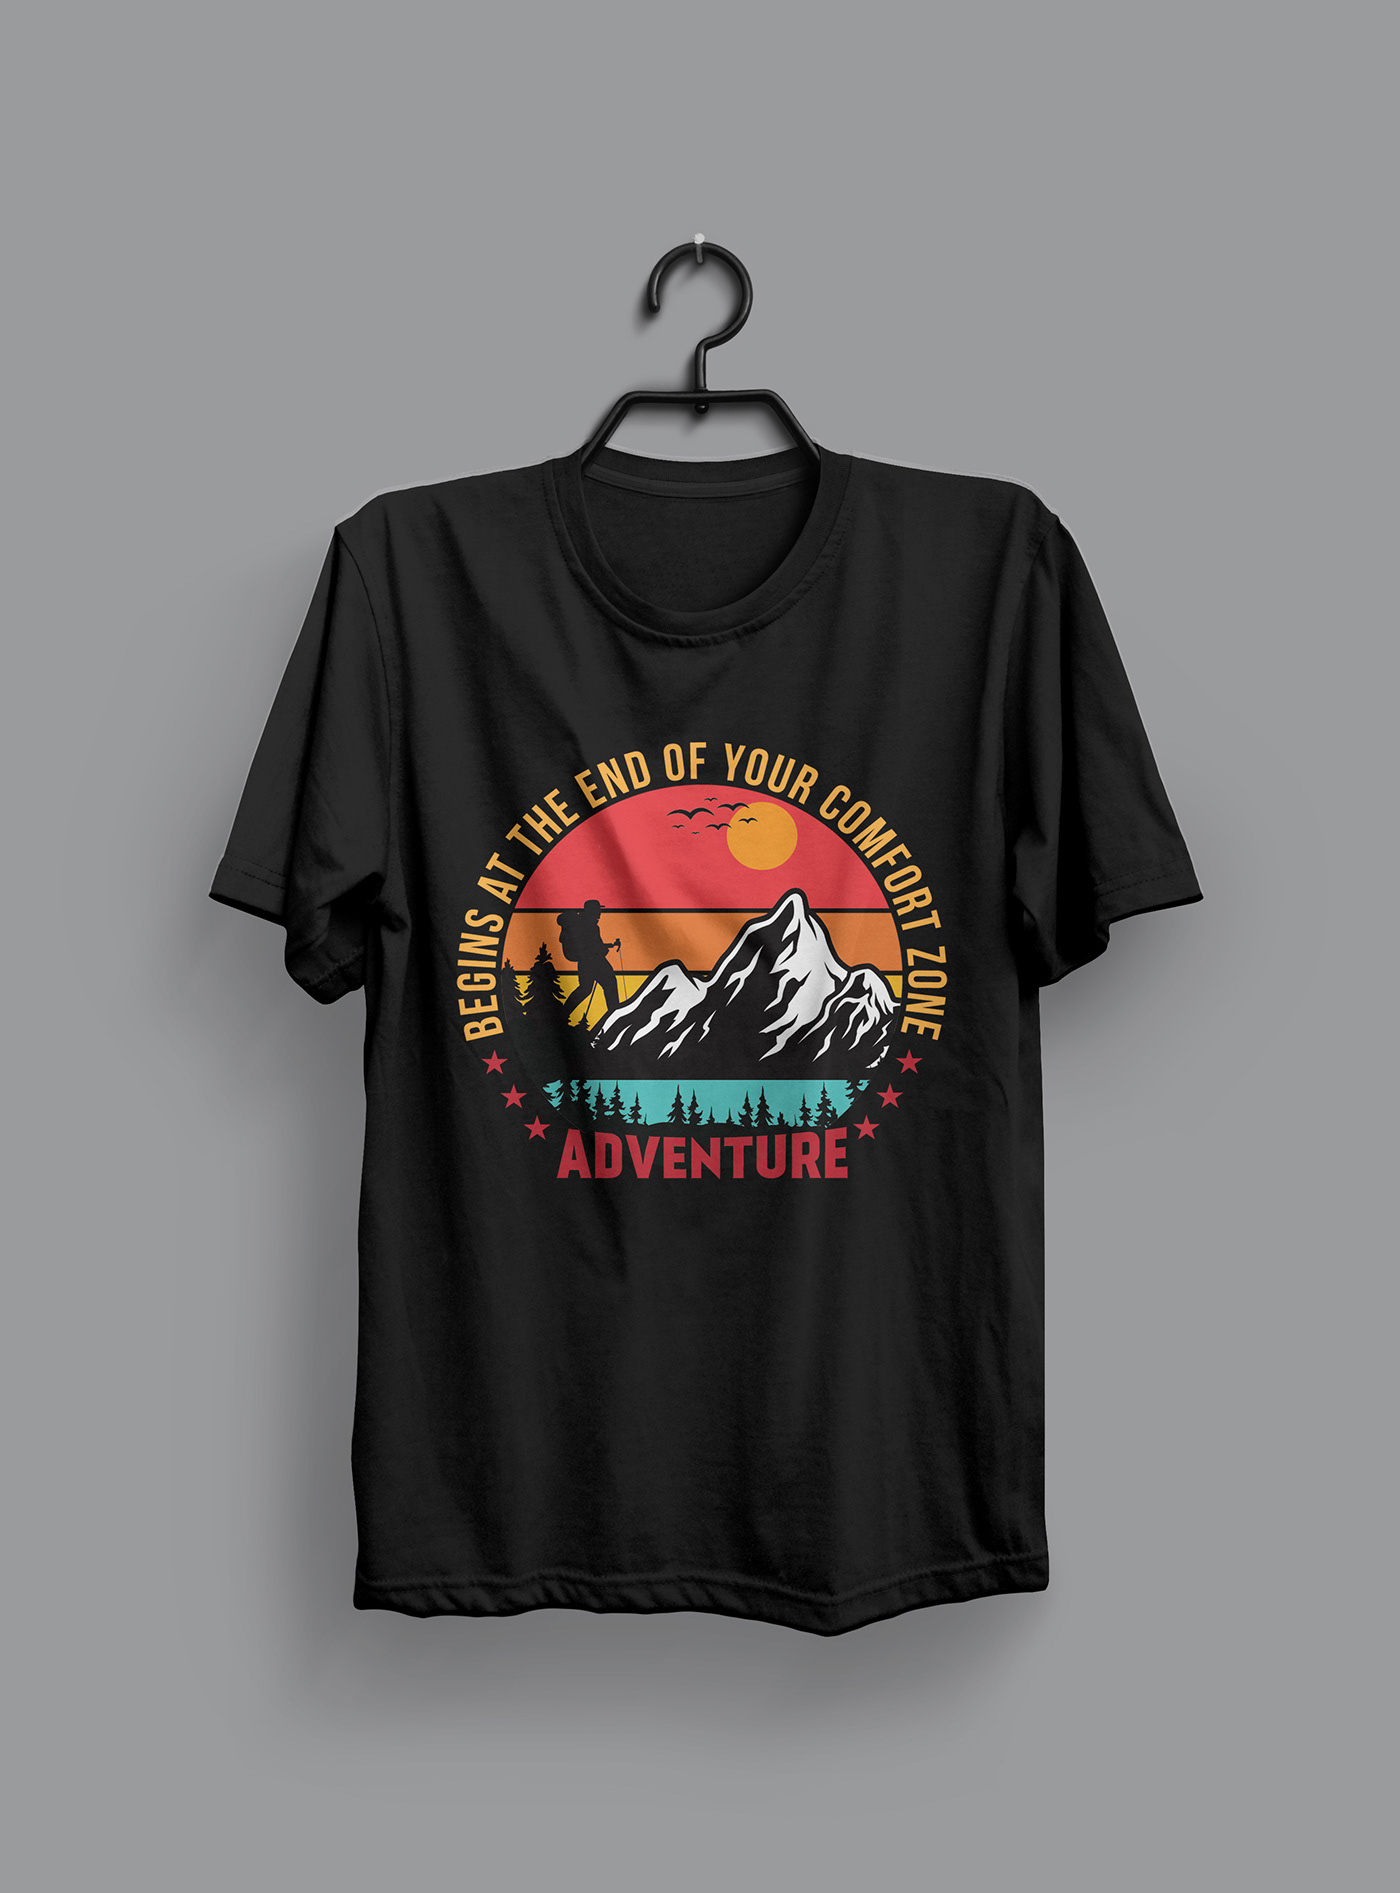 mountain adventure t-shirts tshirt T-Shirt Design hiking design Camping T-shirt adventure t-shirt design adventure T-shirt Designs adventure t-shirt men's mountain t-shirt